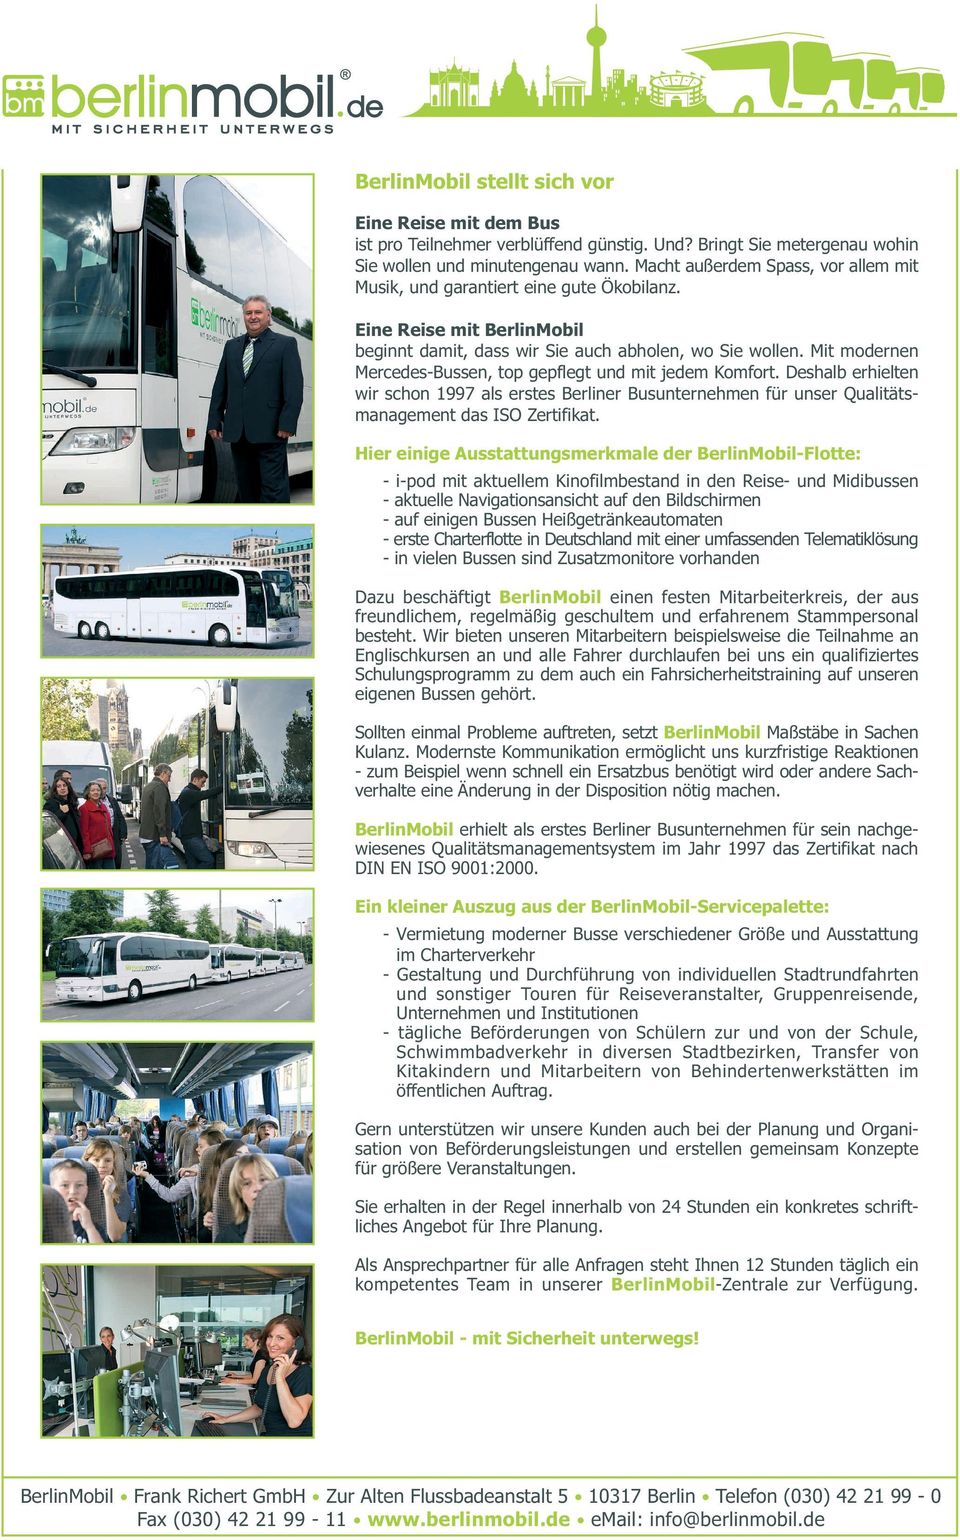 Mit modernen Mercedes-Bussen, top gepflegt und mit jedem Komfort. Deshalb erhielten wir schon 1997 als erstes Berliner Busunternehmen für unser Qualitätsmanagement das ISO Zertifikat.